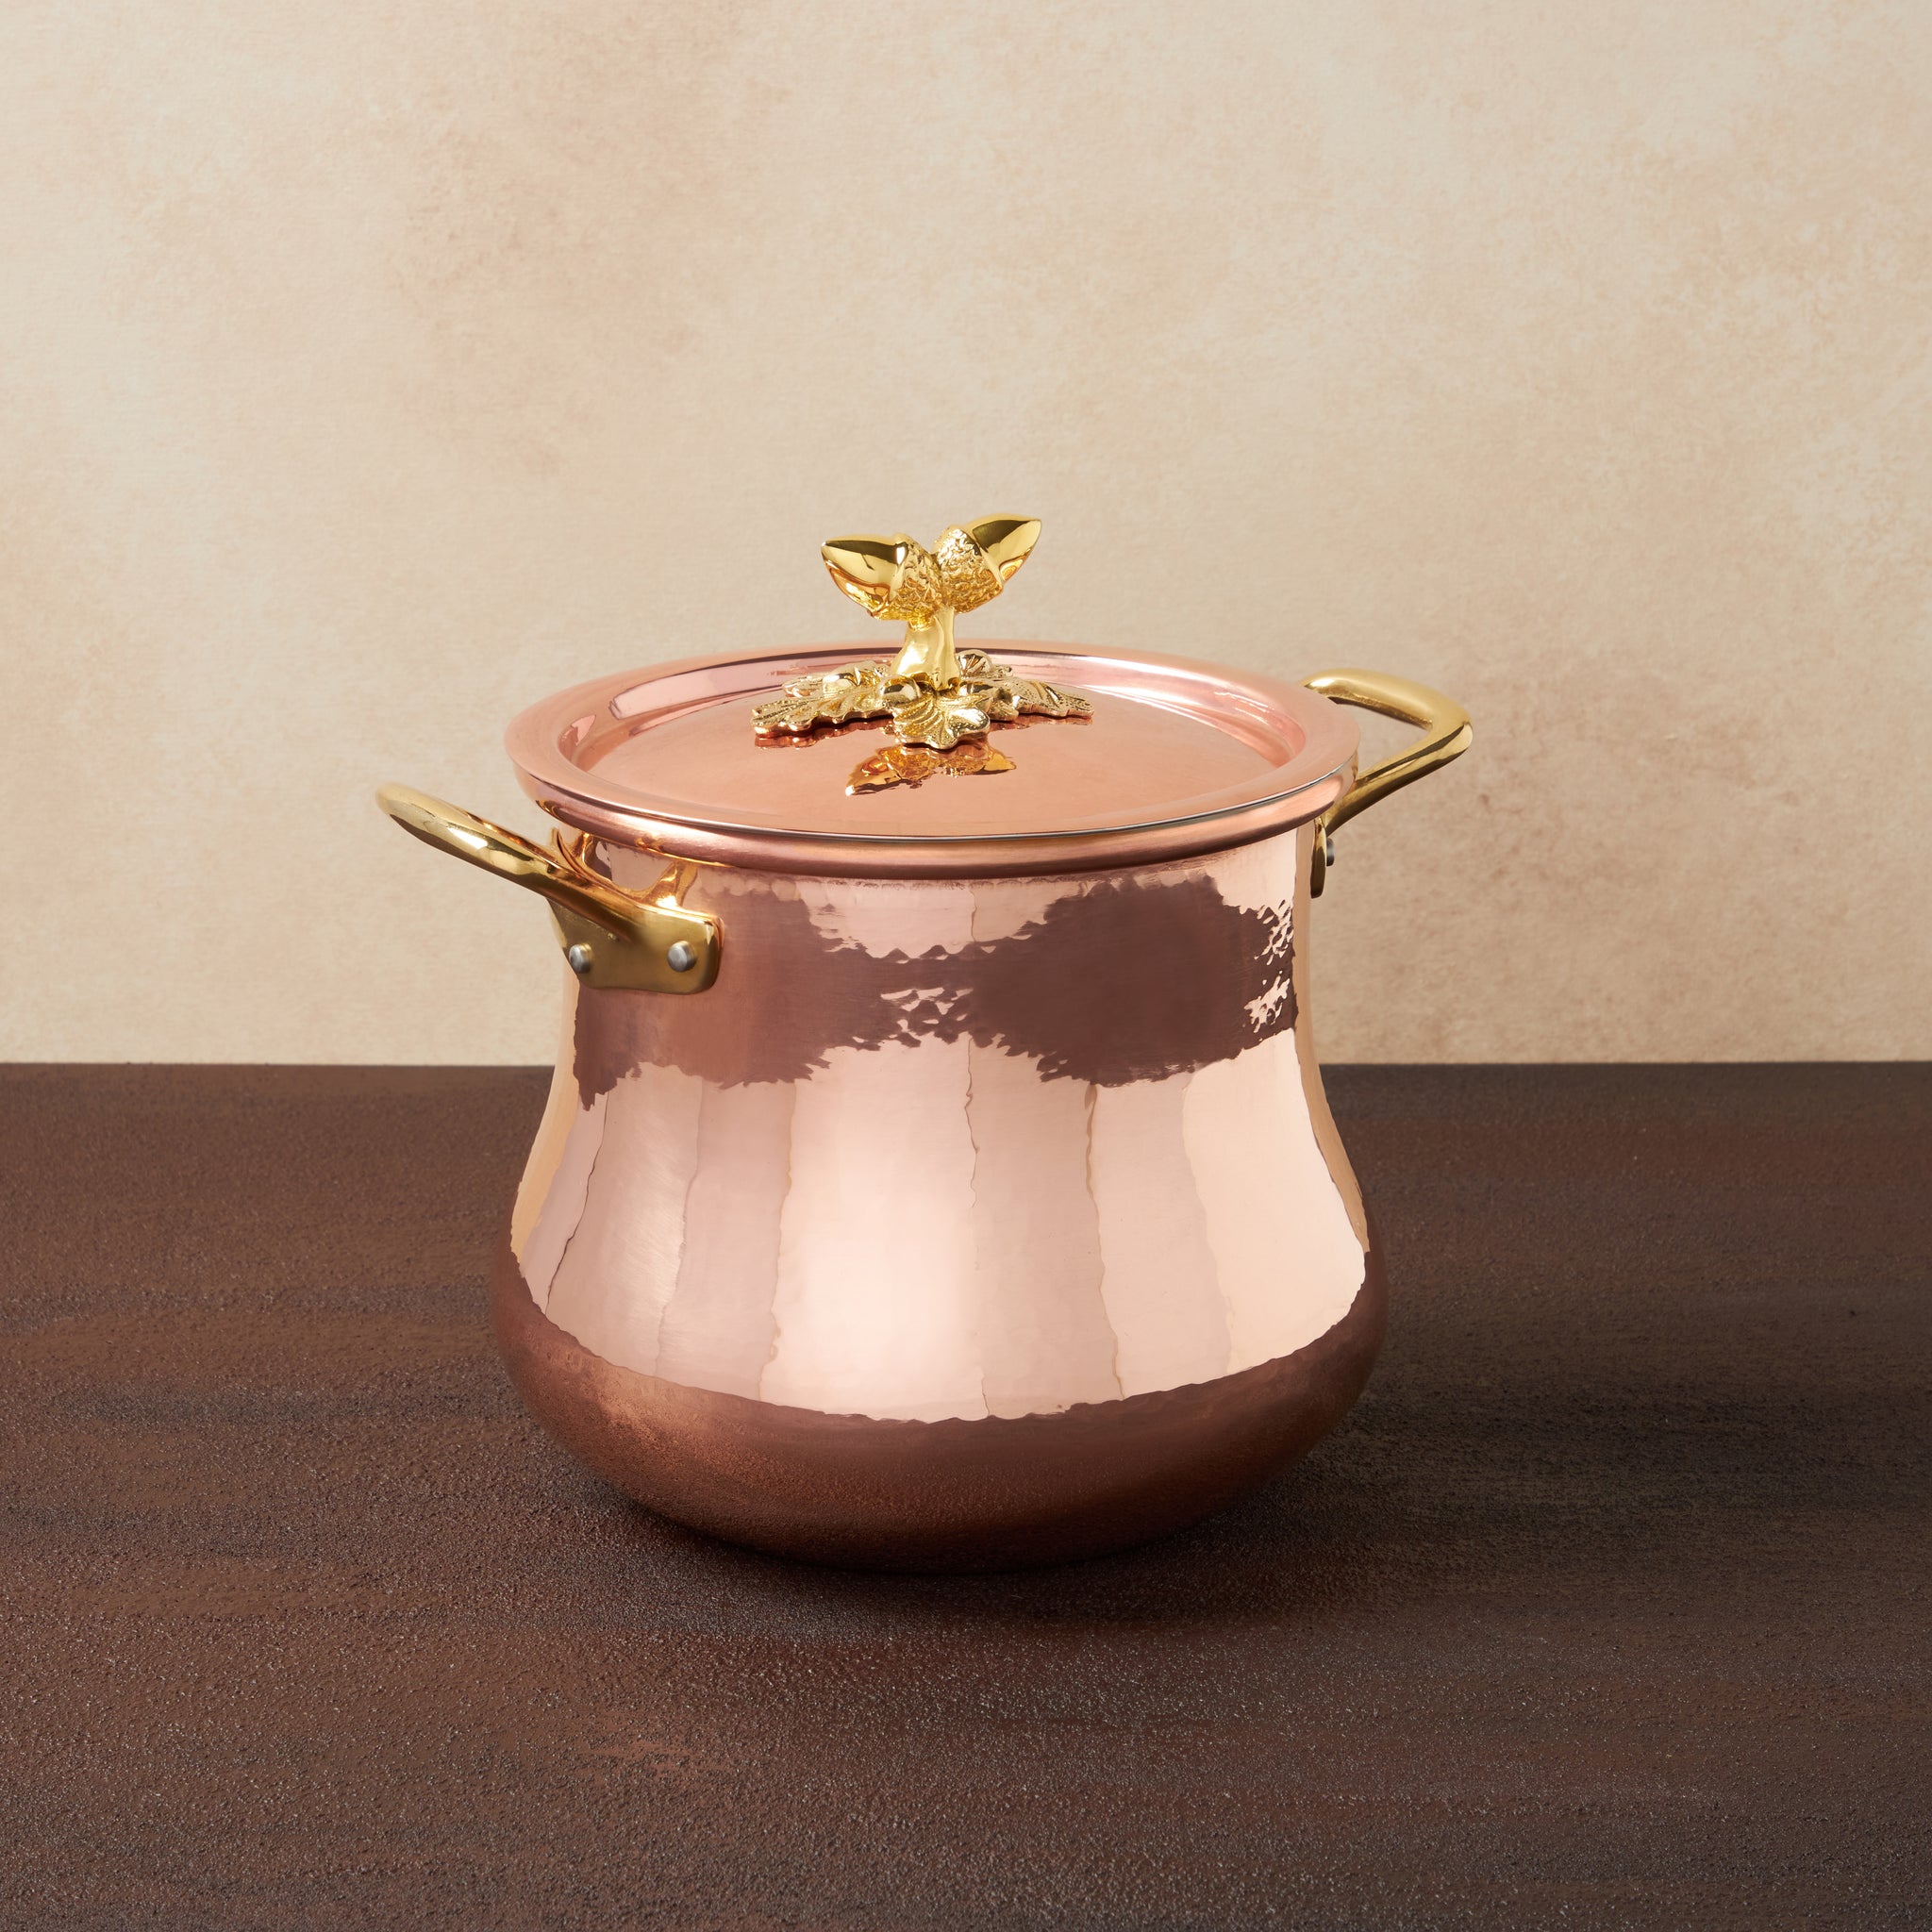 Ruffoni Historia Decor Copper Belly Soup Pot - 5.5qt